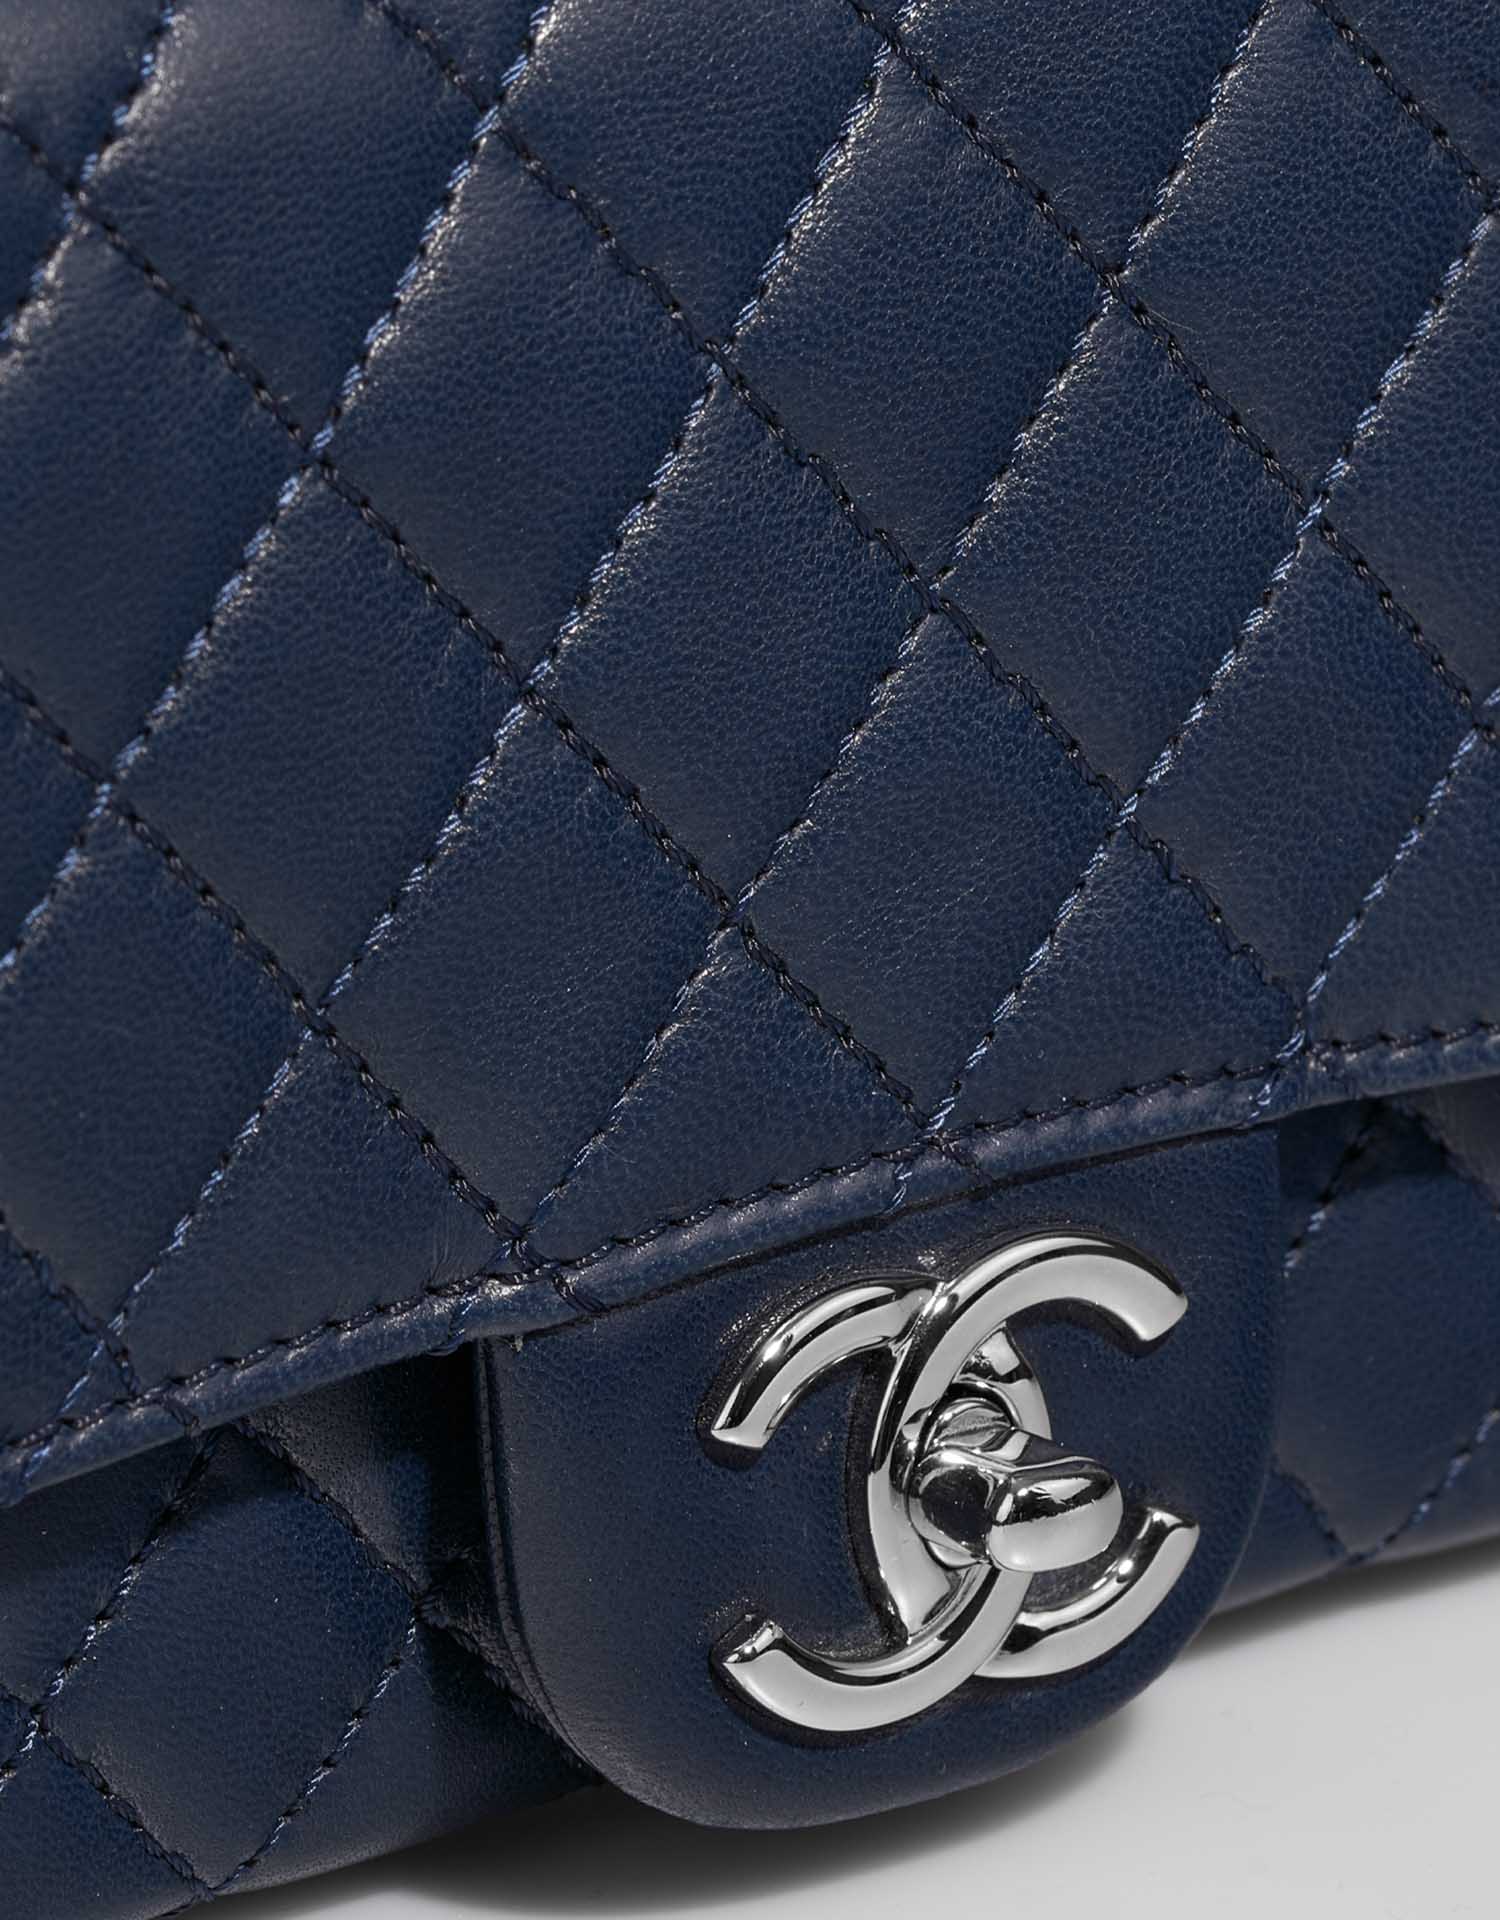 Chanel Timeless Medium DarkBlue Verschluss-System | Verkaufen Sie Ihre Designer-Tasche auf Saclab.com